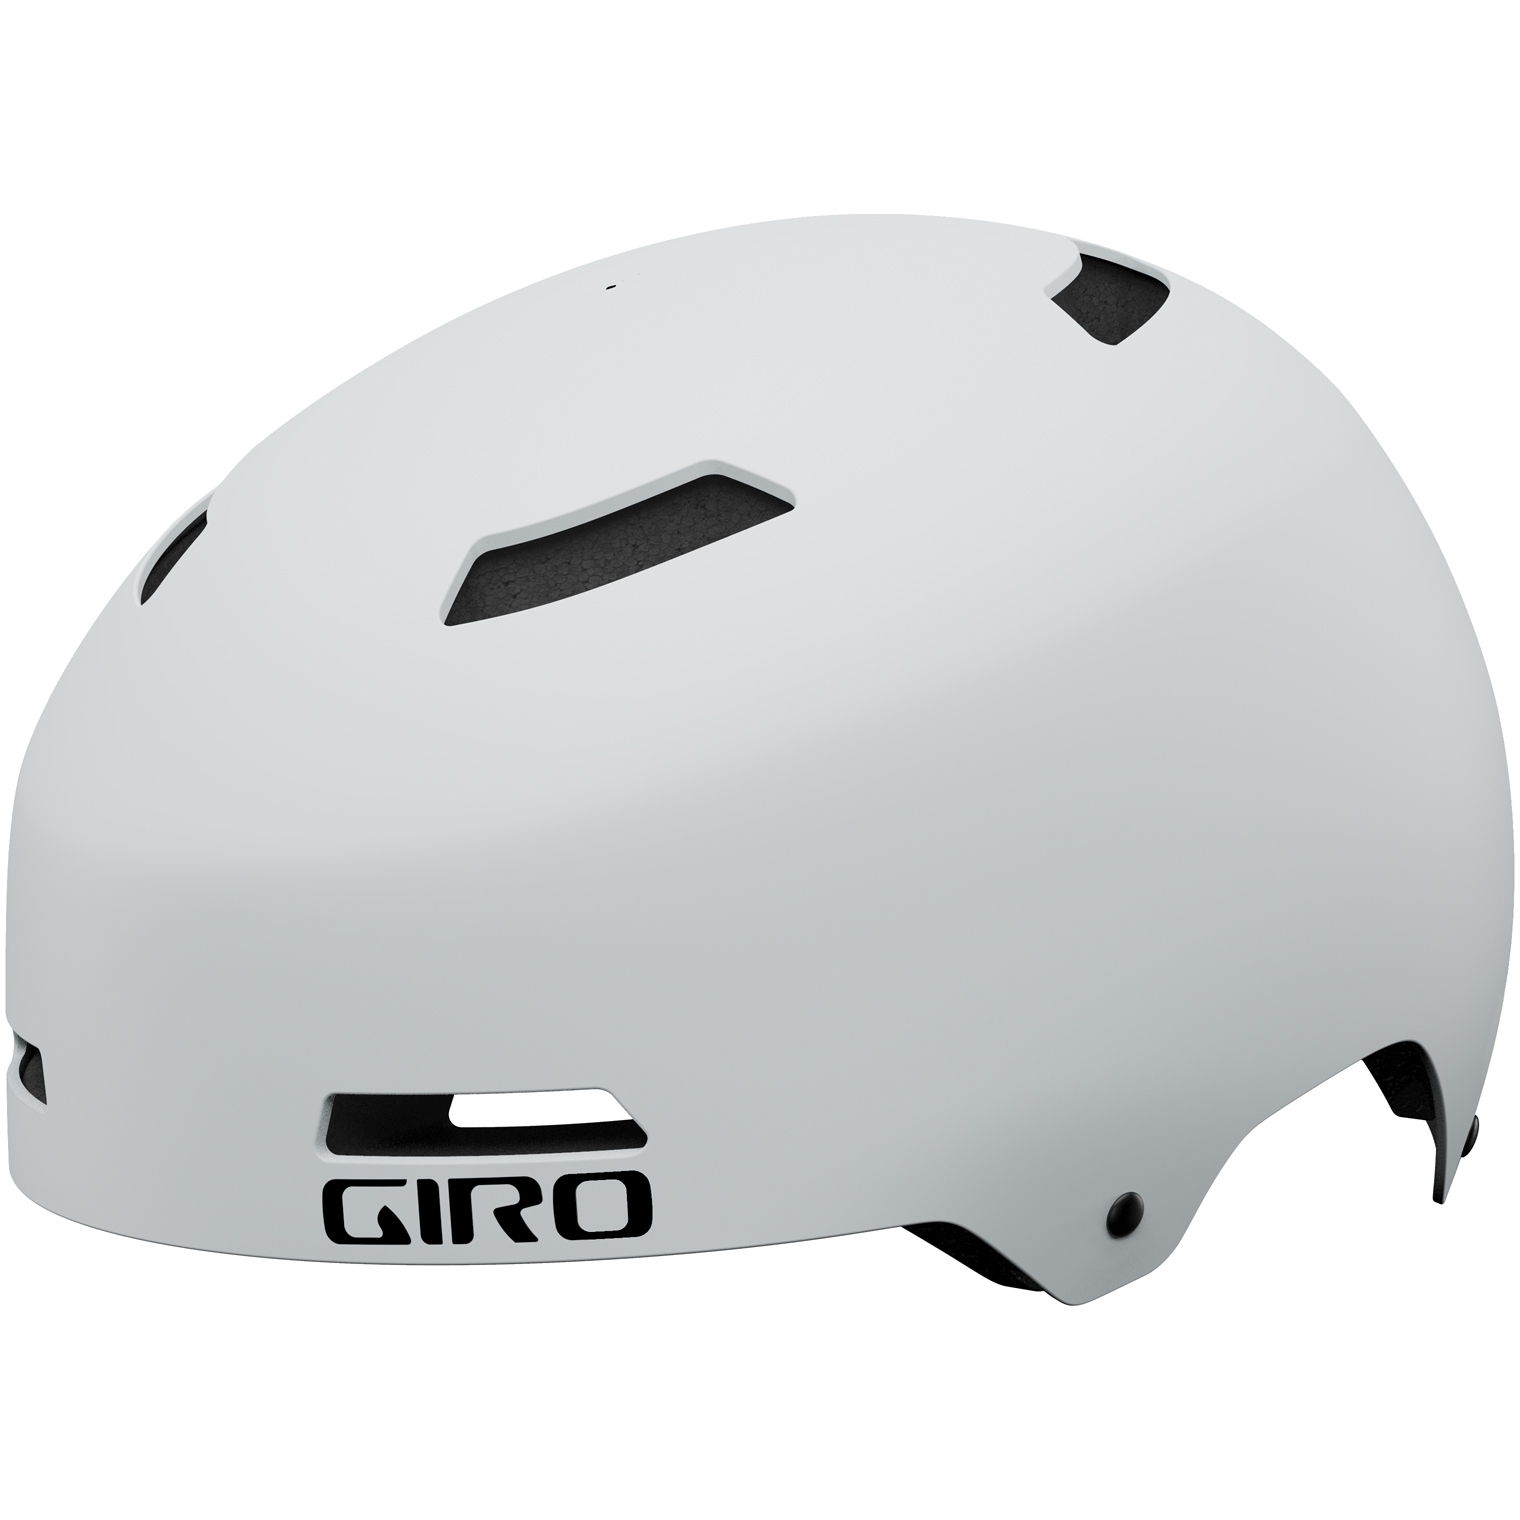 Produktbild von Giro Quarter FS Helm - matte chalk